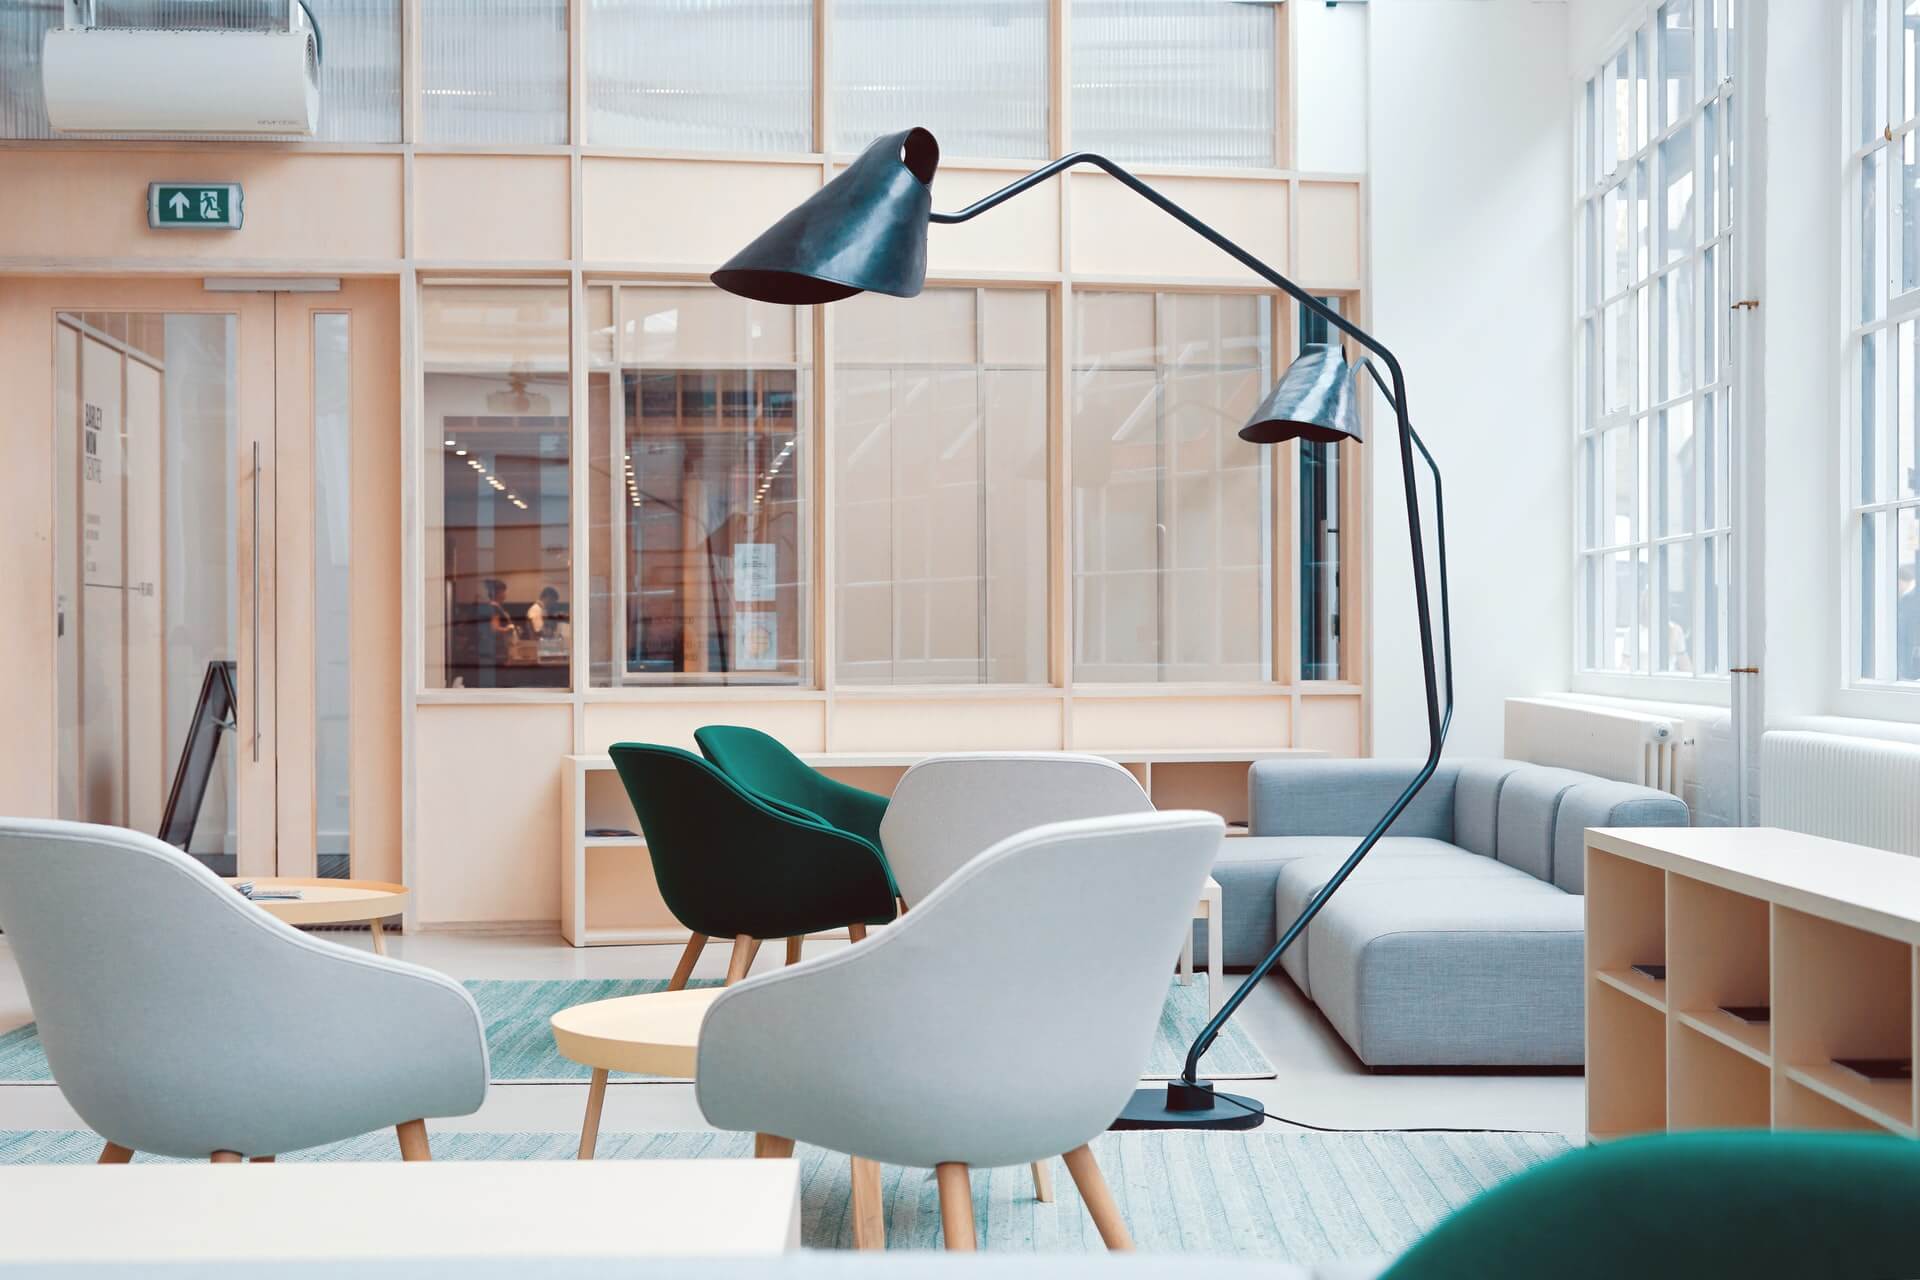 oficina flexible coworking barcelona sillon verde sillon gris con lampara negra